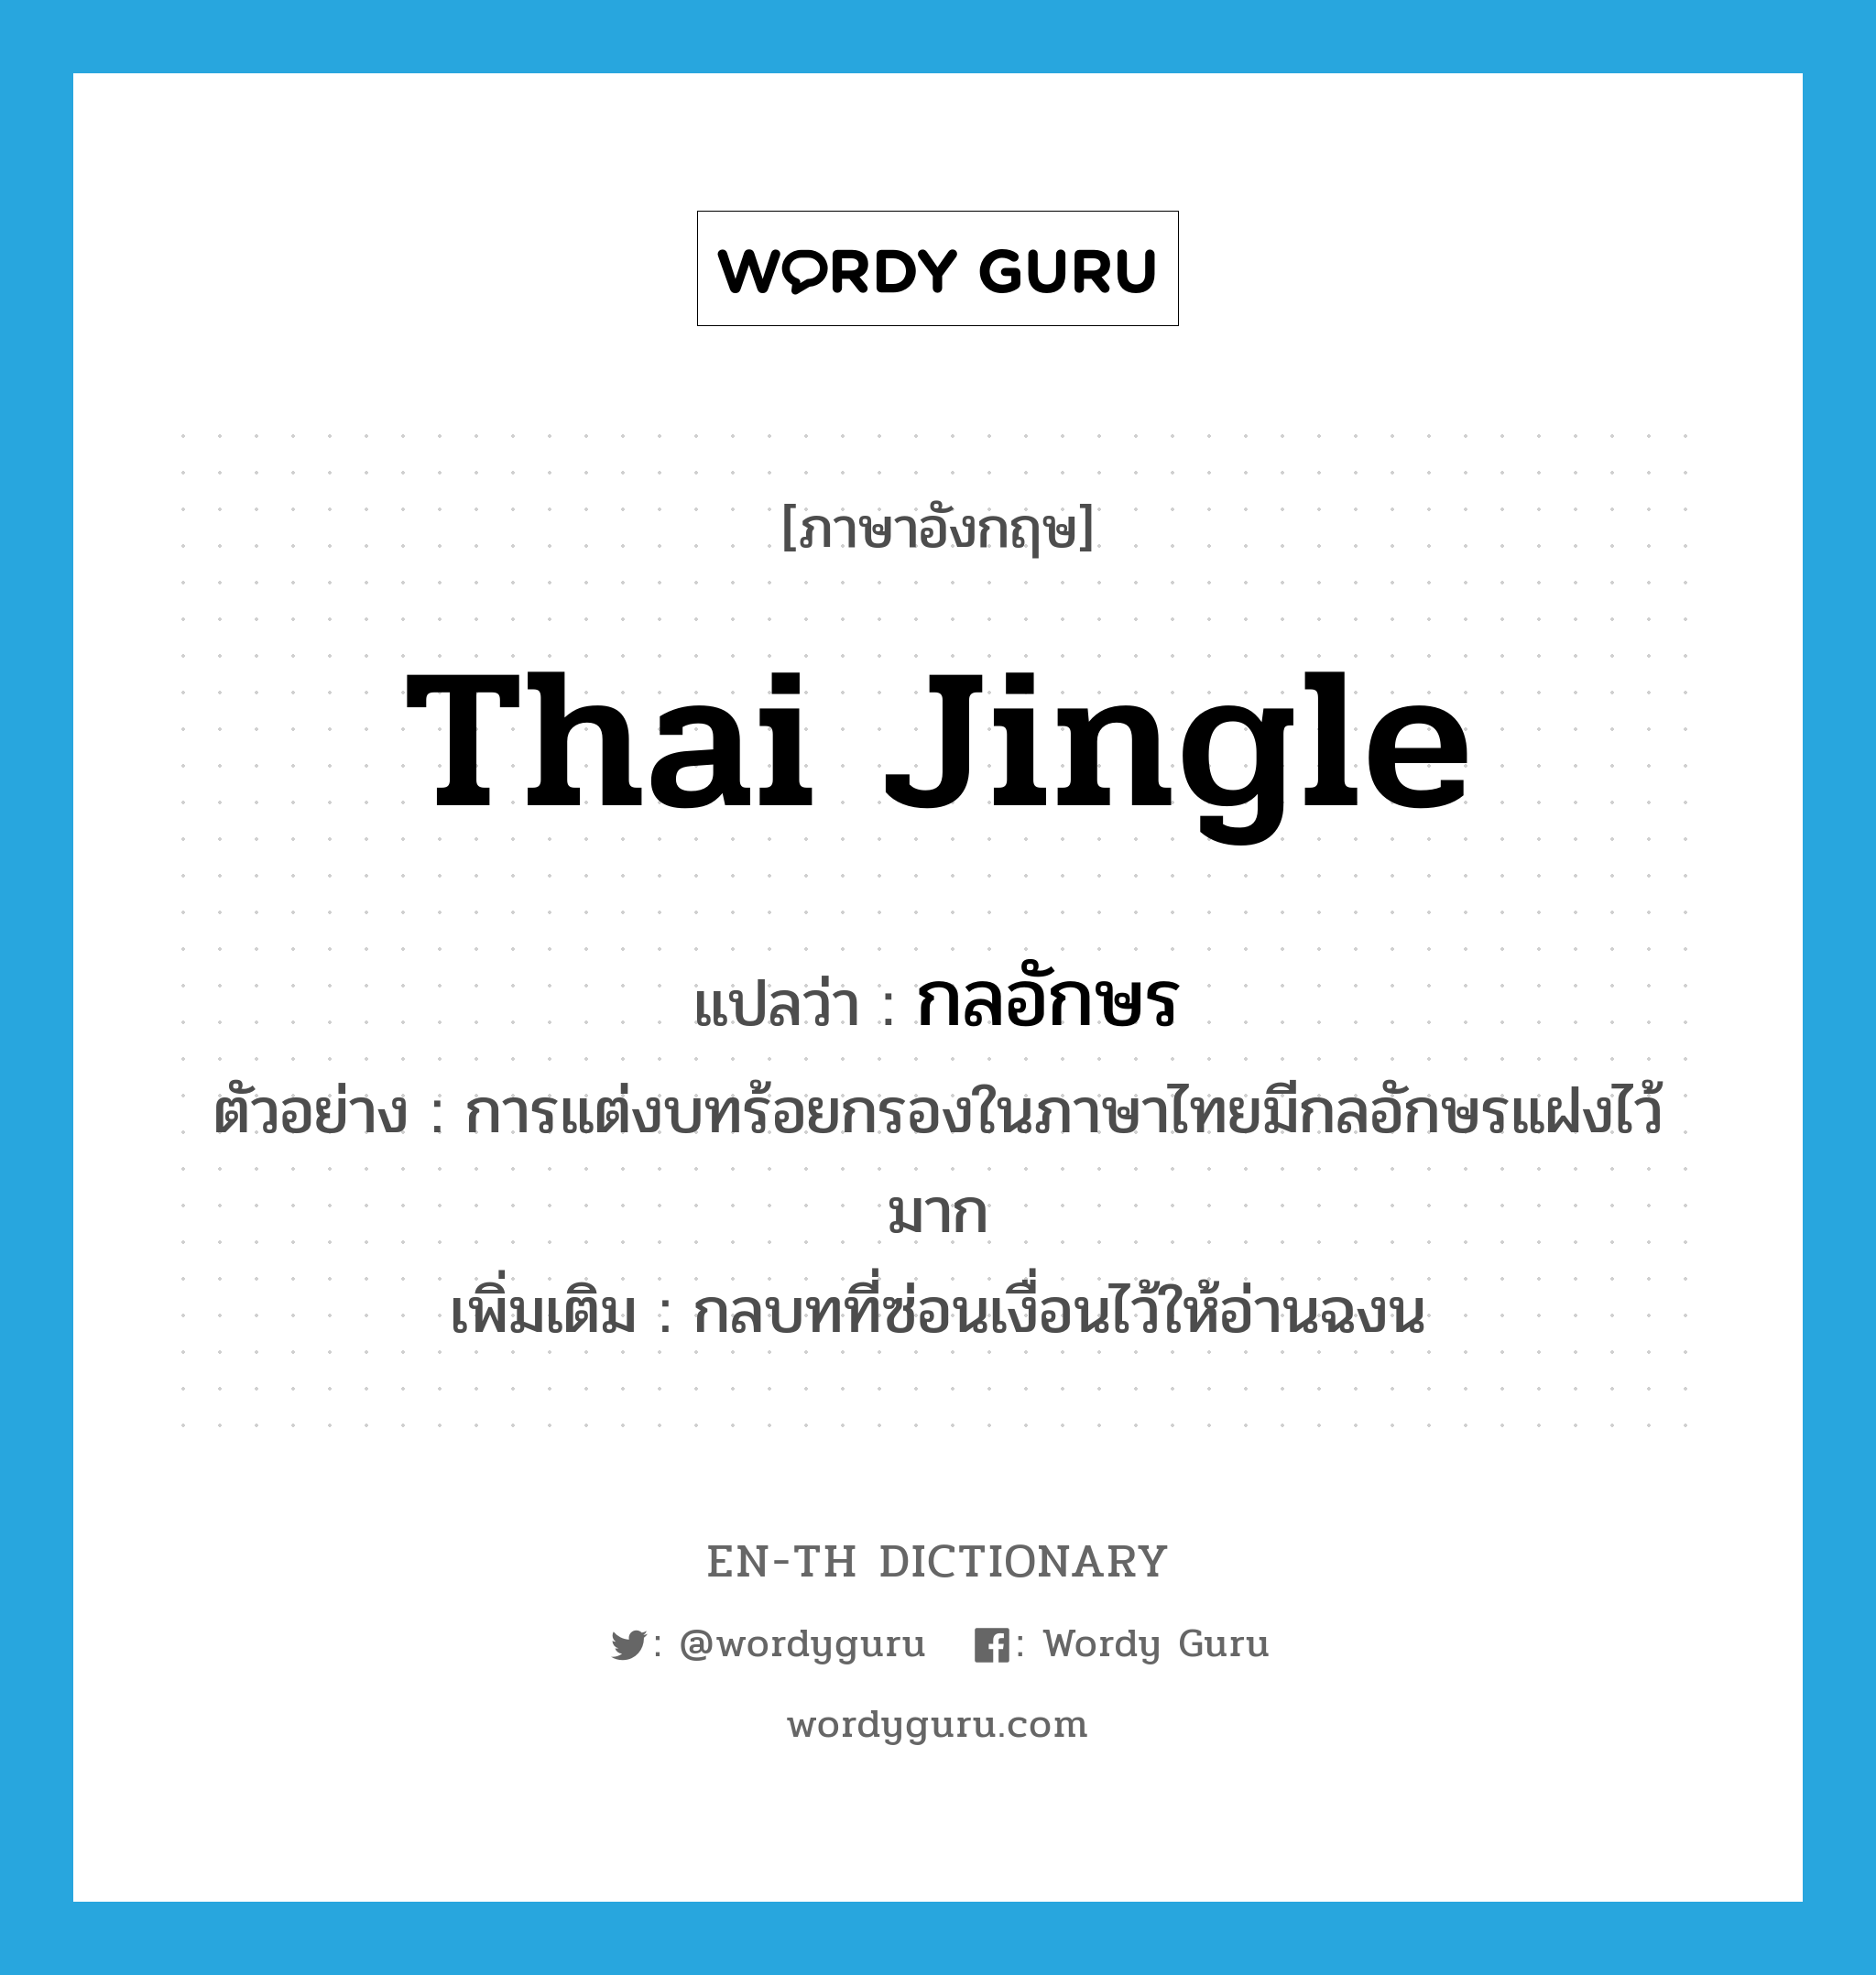 กลอักษร ภาษาอังกฤษ?, คำศัพท์ภาษาอังกฤษ กลอักษร แปลว่า Thai jingle ประเภท N ตัวอย่าง การแต่งบทร้อยกรองในภาษาไทยมีกลอักษรแฝงไว้มาก เพิ่มเติม กลบทที่ซ่อนเงื่อนไว้ให้อ่านฉงน หมวด N